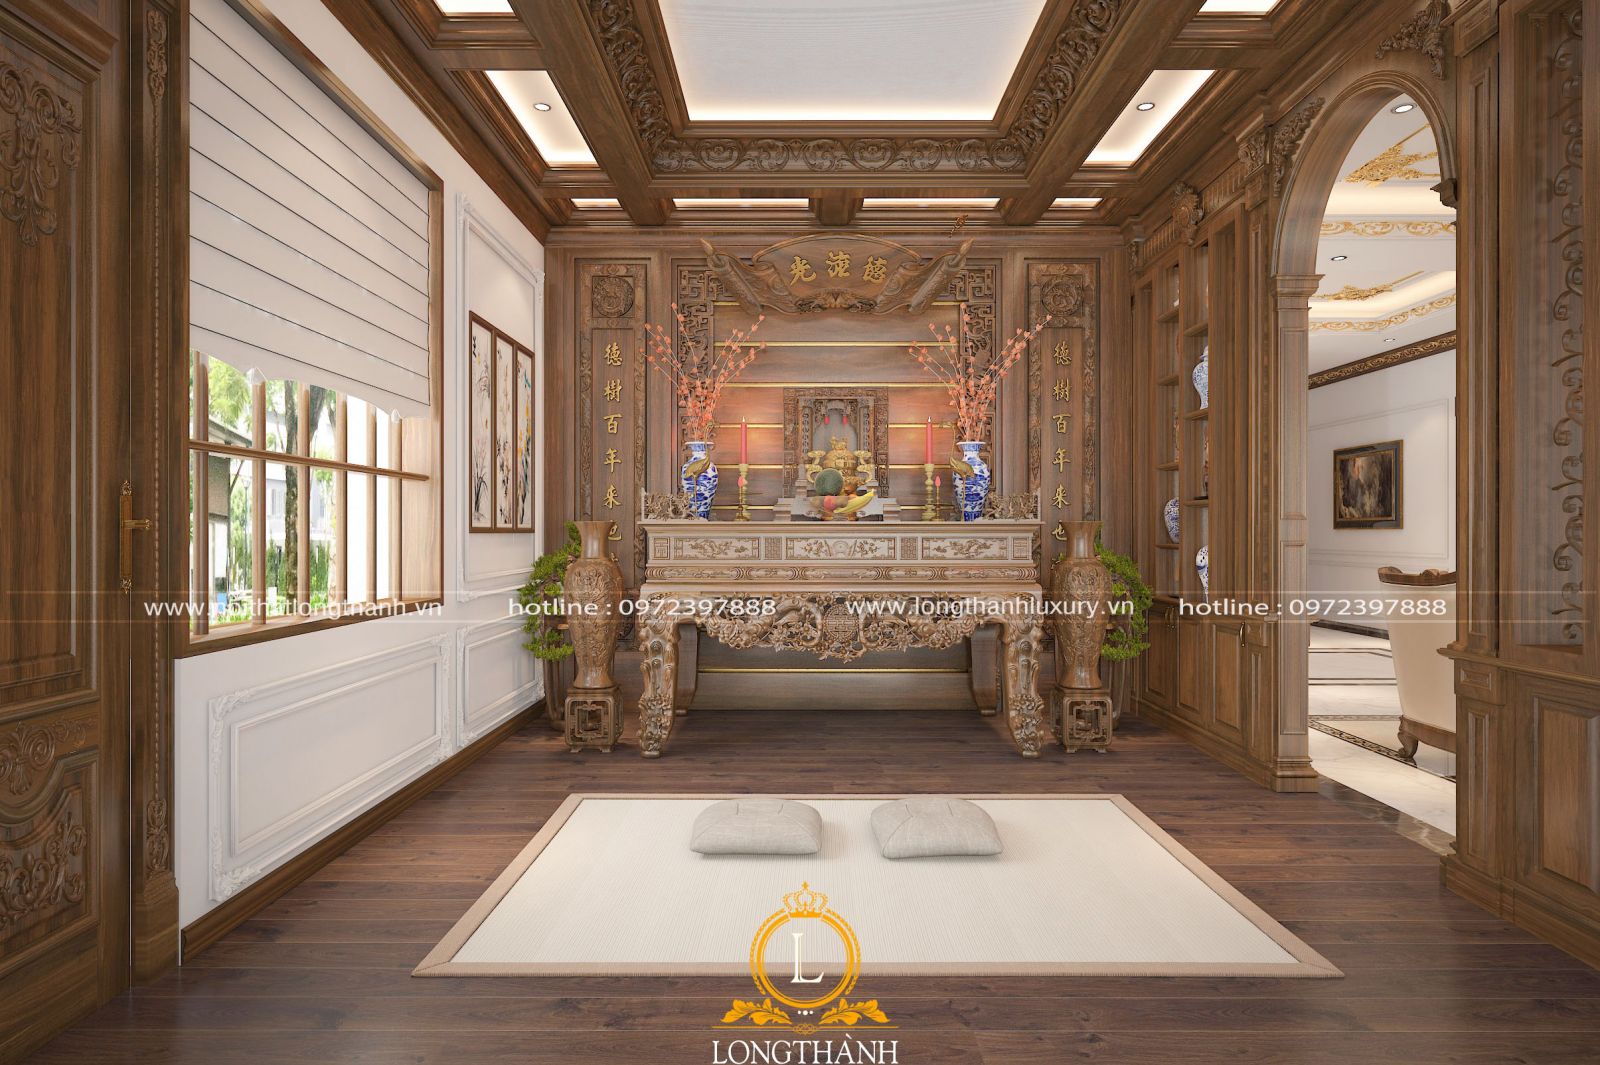 Thiết kế nội thất phòng thờ bằng gỗ tự nhiên trang trọng